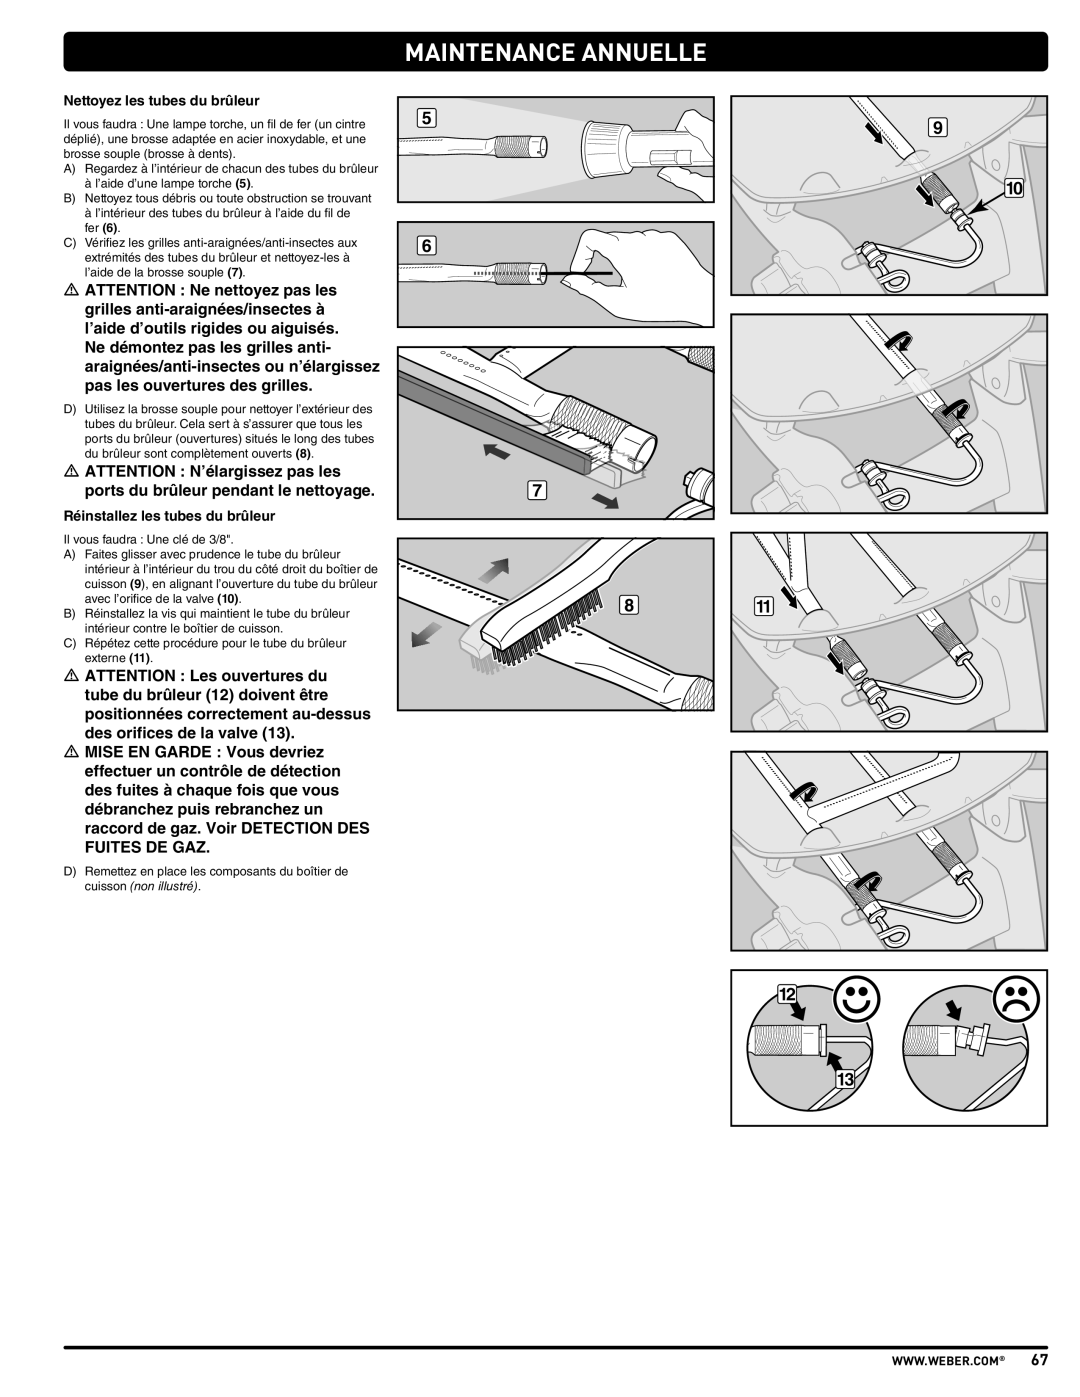 Weber 57515 manual Maintenance Annuelle, Nettoyez les tubes du brûleur, Réinstallez les tubes du brûleur 